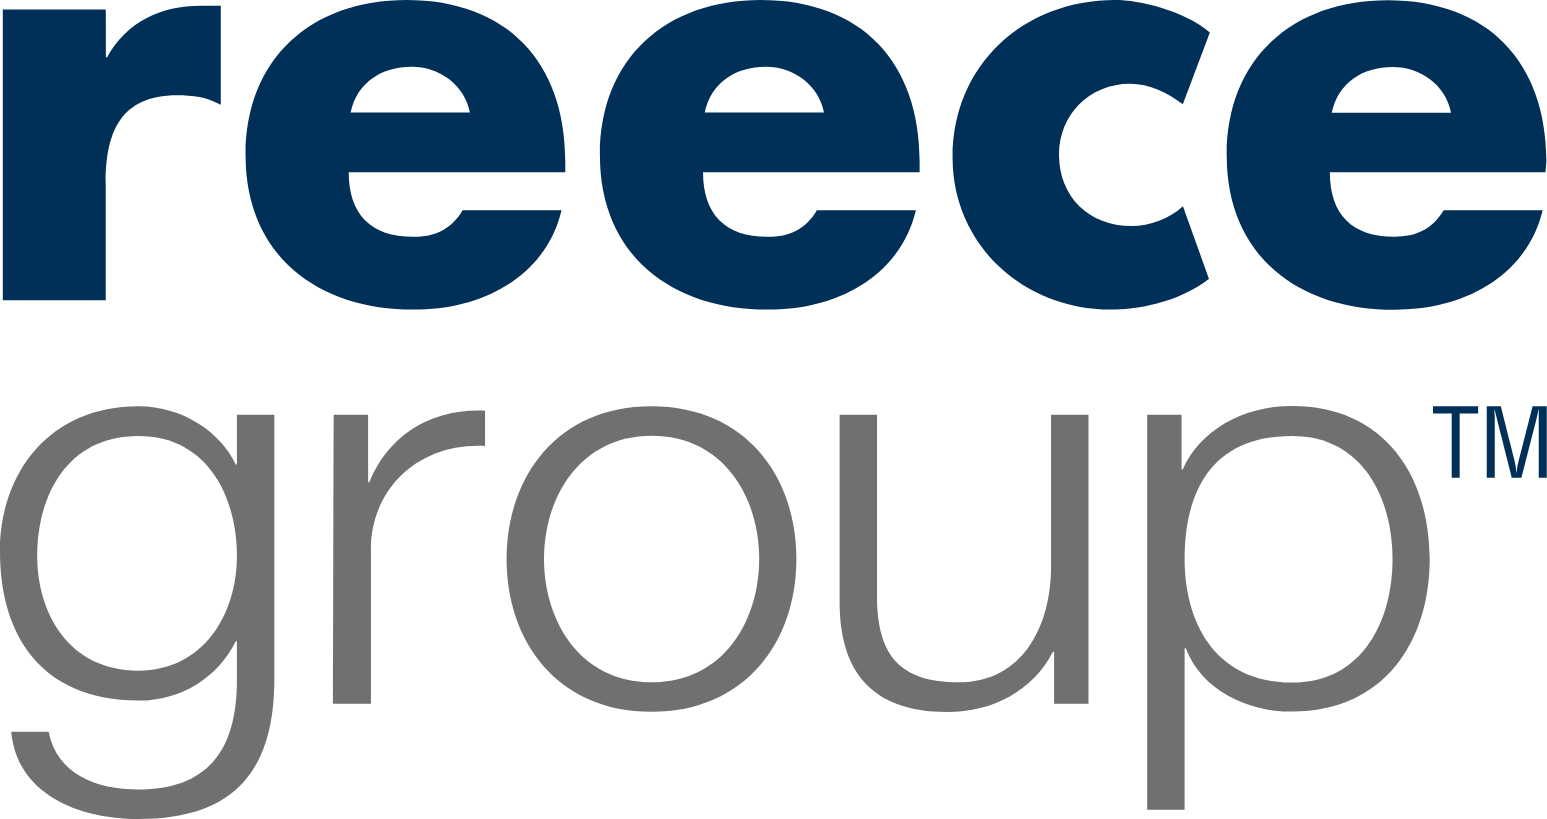 Reece Group logo large (transparent PNG)